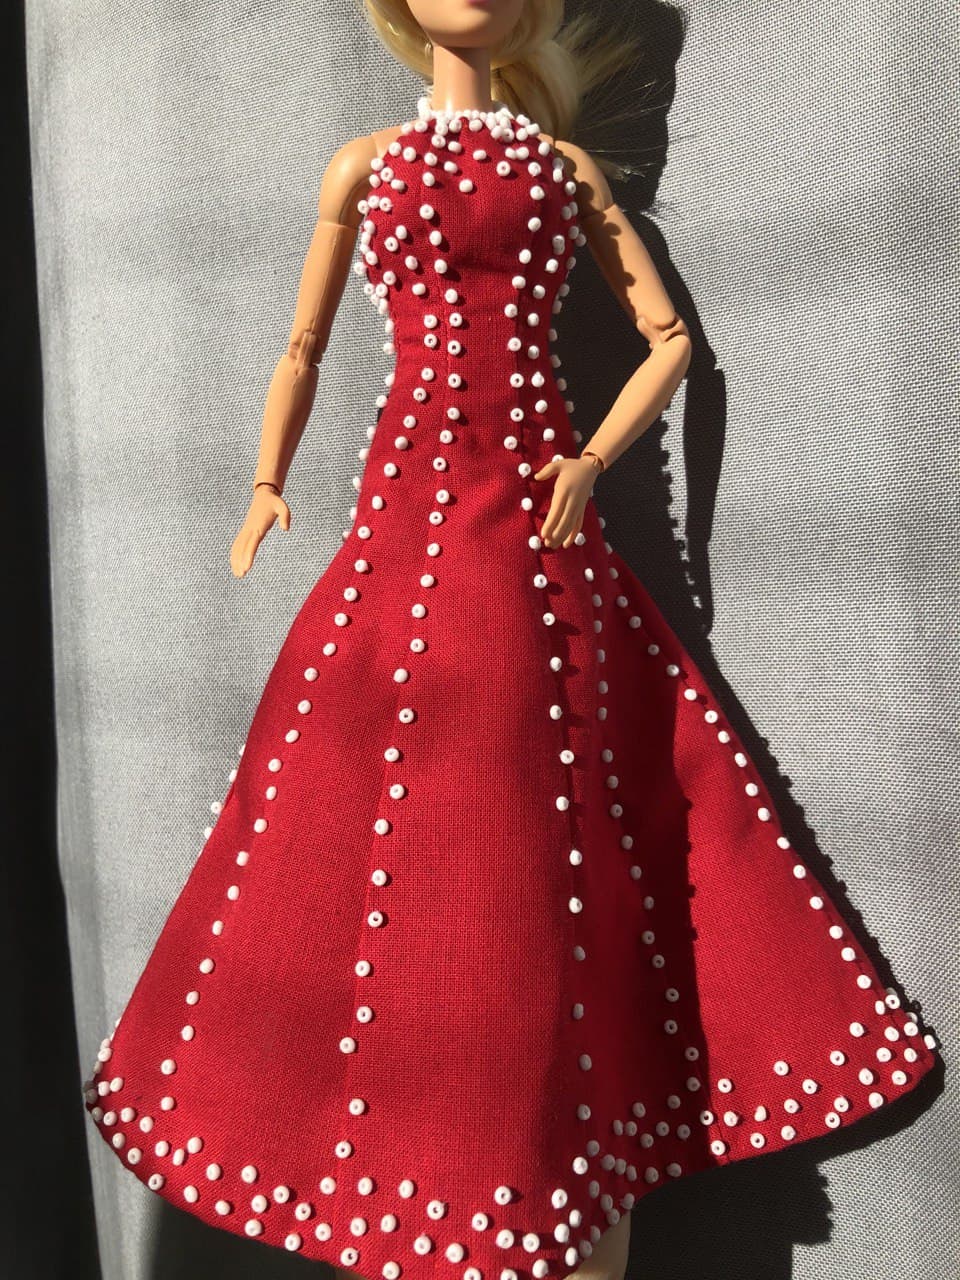 2019 Holiday Barbie Hallmark Keepsake Ornament - Hooked on Hallmark Ornament